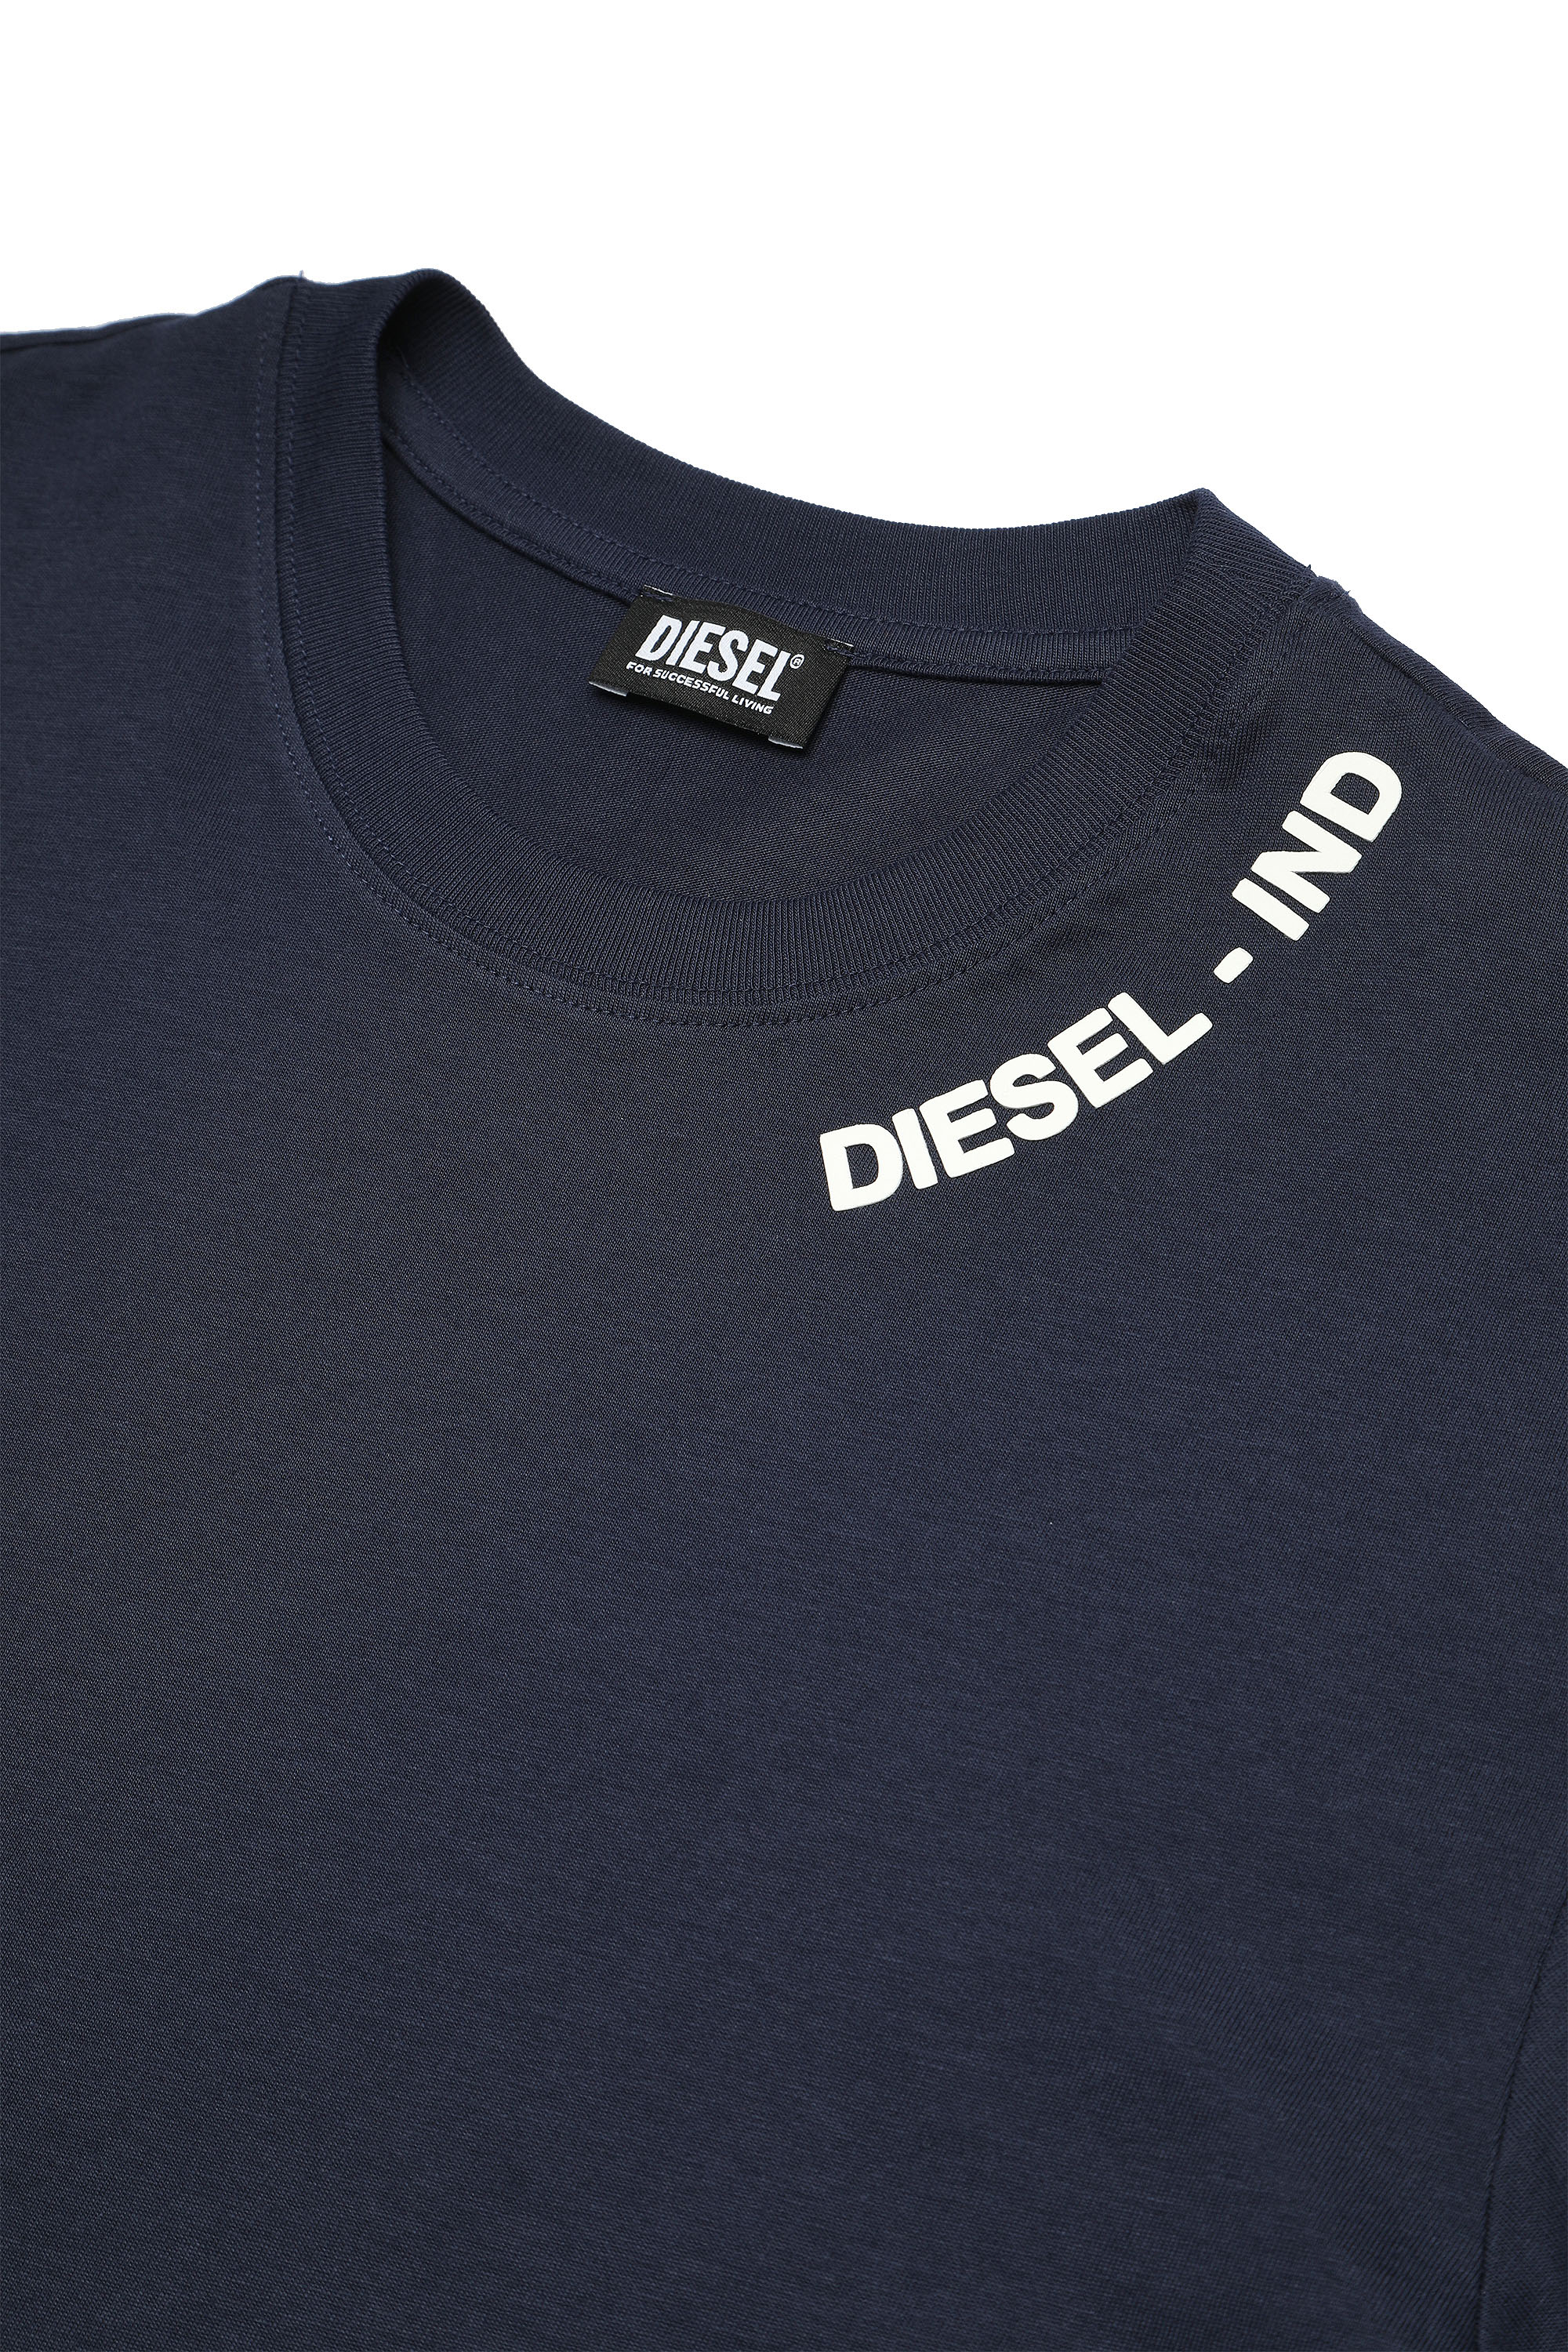 Diesel - UMSET-DIEGOLS-JULIOJ, Blue - Image 3